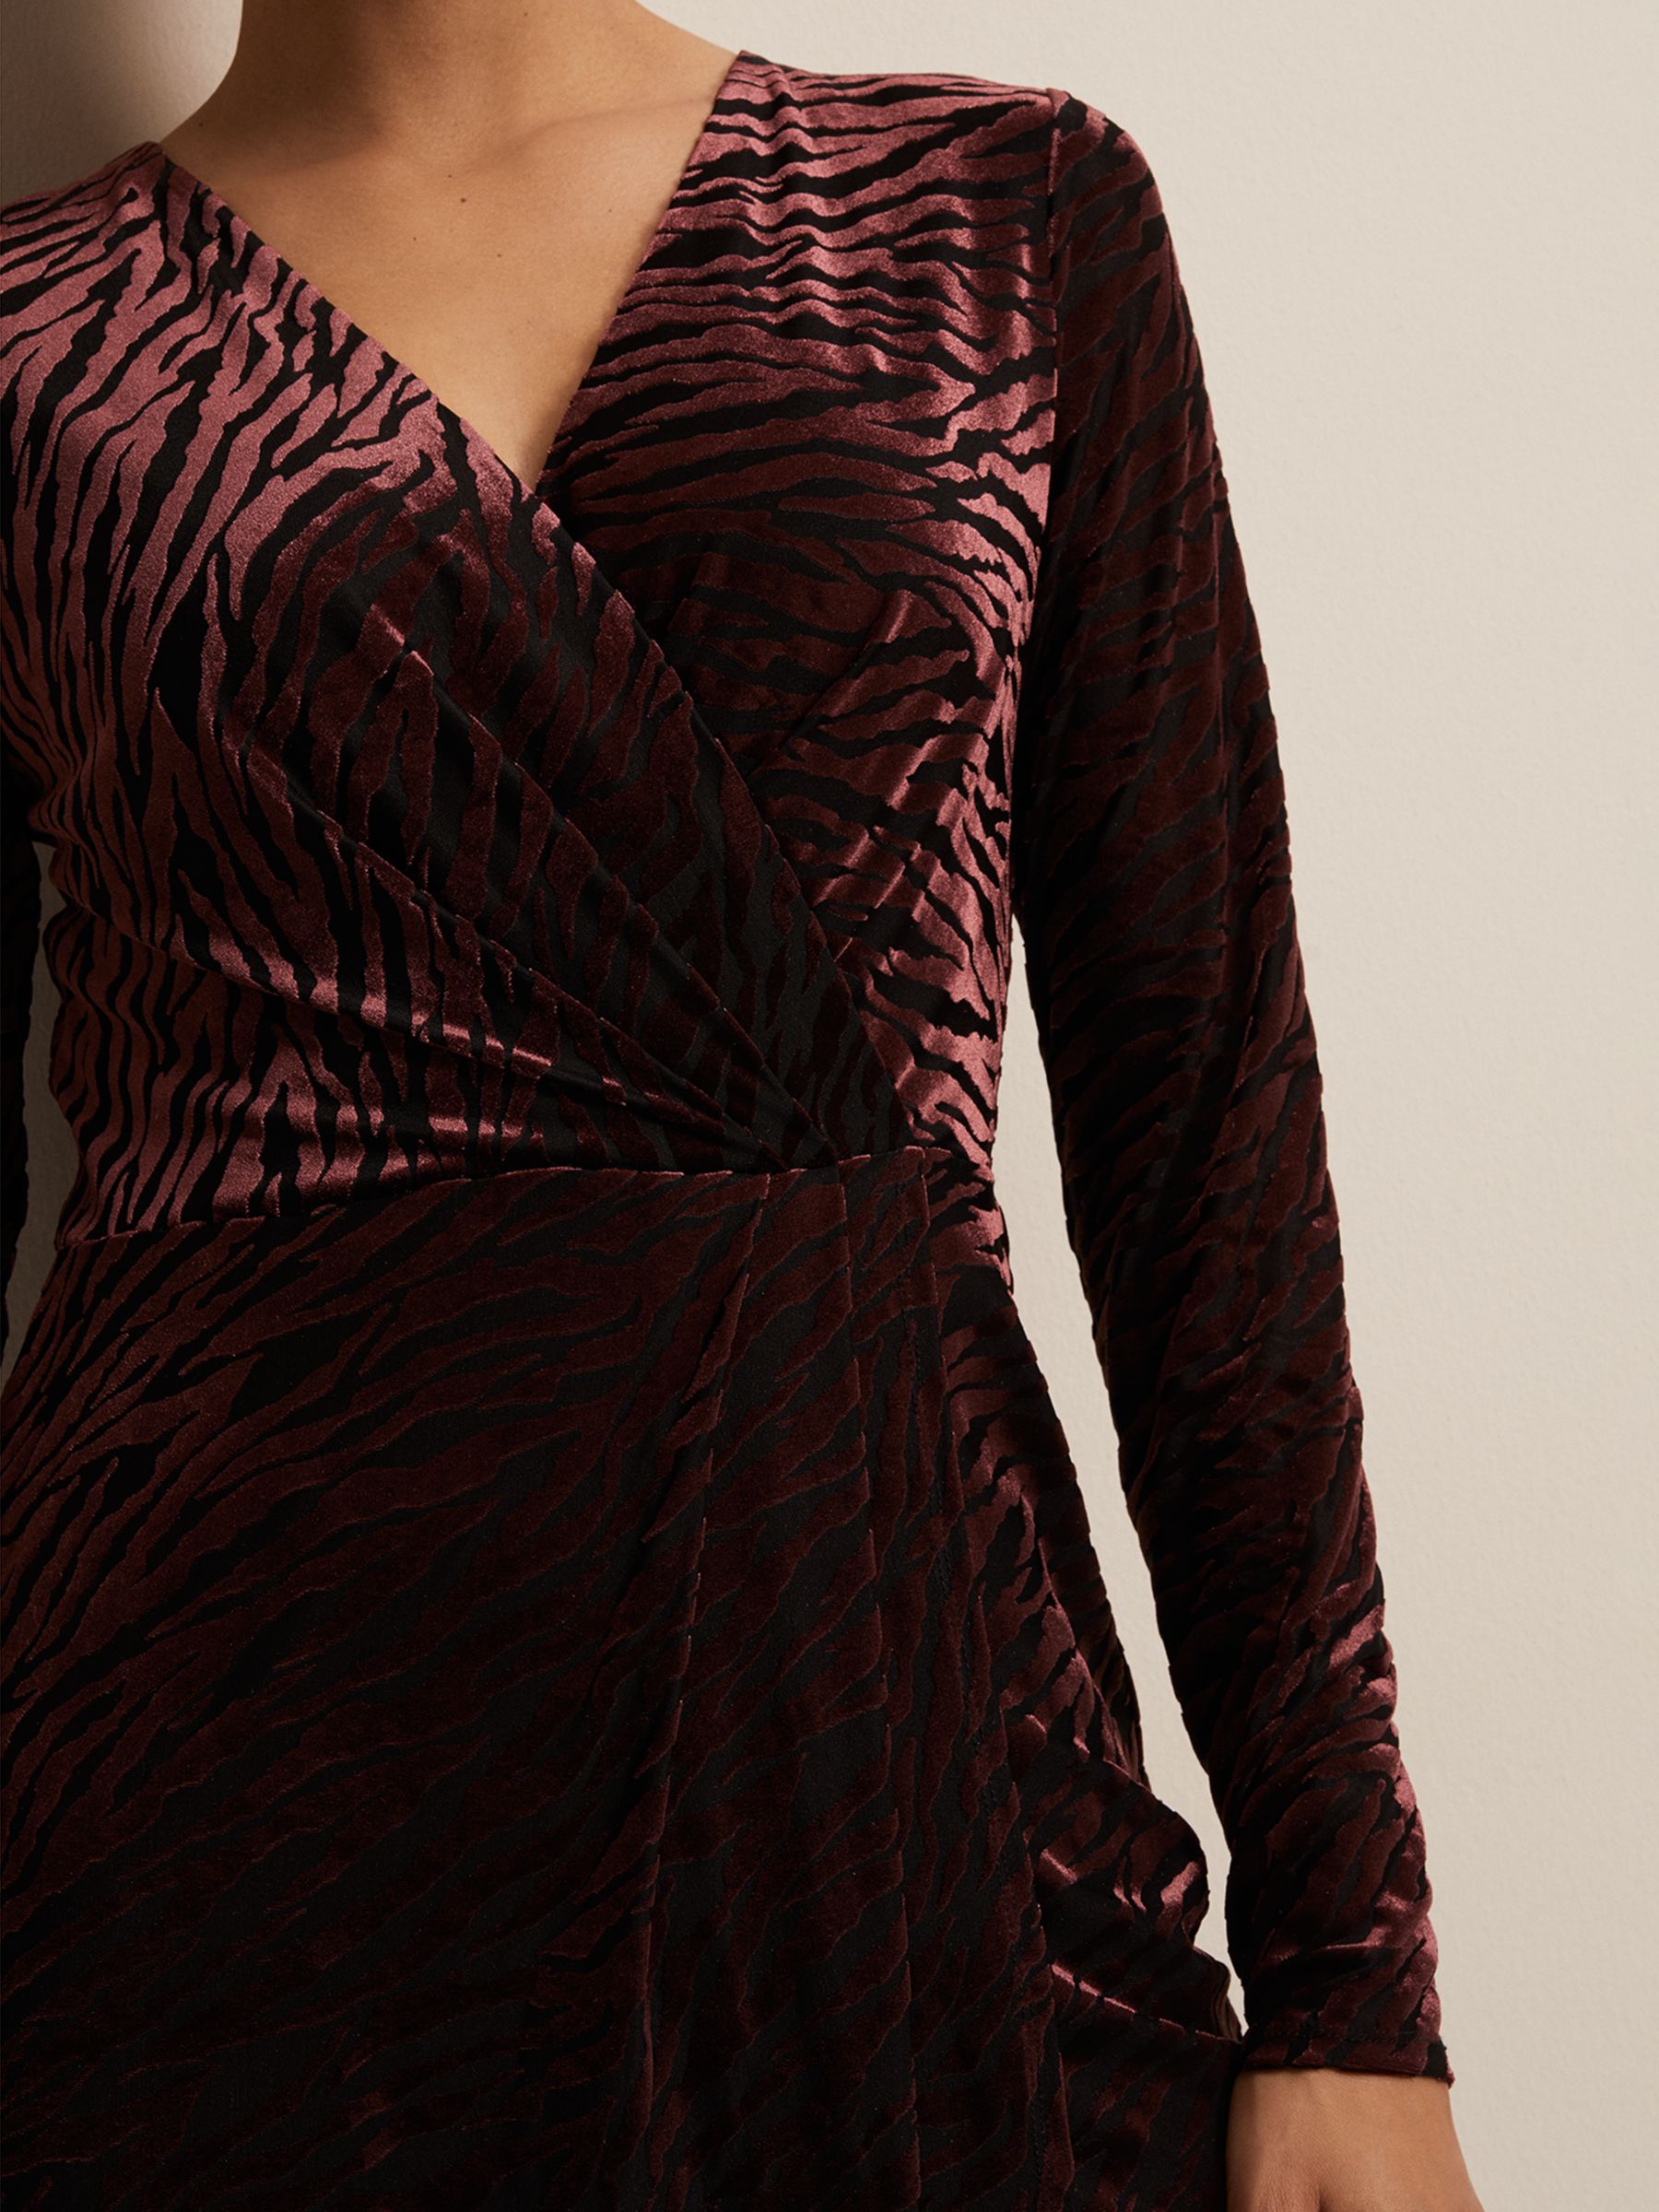 Buy Phase Eight Elina Zebra Velvet Dress, Burgundy Online at johnlewis.com